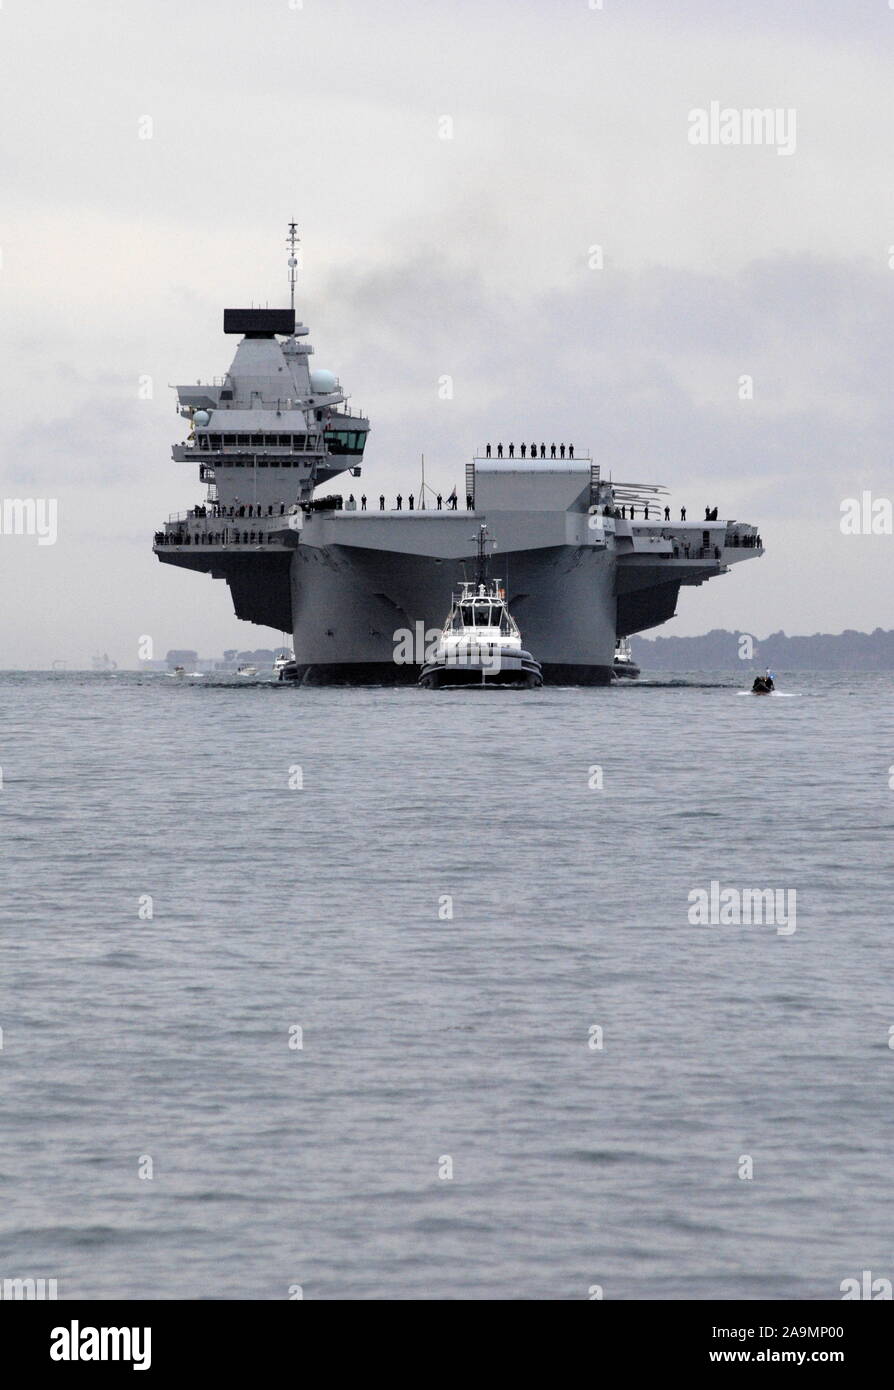 AJAXNETPHOTO. 16. AUGUST 2017. PORTSMOUTH, England. - Der größte Kriegsschiff der Royal Navy SEGEL IN HOME PORT-HMS KÖNIGIN ELIZABTH, DAS ERSTE VON ZWEI 65.000 Tonnen, 900 m lang, STATE-OF-THE-ART FLUGZEUGTRÄGER segelte in Portsmouth Naval Base in den frühen Stunden des Morgens sanft drückte und drängte durch sechs Schleppern in ihre neuen Liegeplatz auf der Princess Royal Jetty. Die £ 3 Mrd. FFR, das größte Kriegsschiff, das jemals gebaut wurde für die Royal Navy, KAM AN BEI IHR ZU HAUSE PORT ZWEI TAGE VOR IHREM URSPRÜNGLICHEN ZEITPLAN angekommen. Foto: Jonathan Eastland/AJAX REF: D 171608 6771 Stockfoto